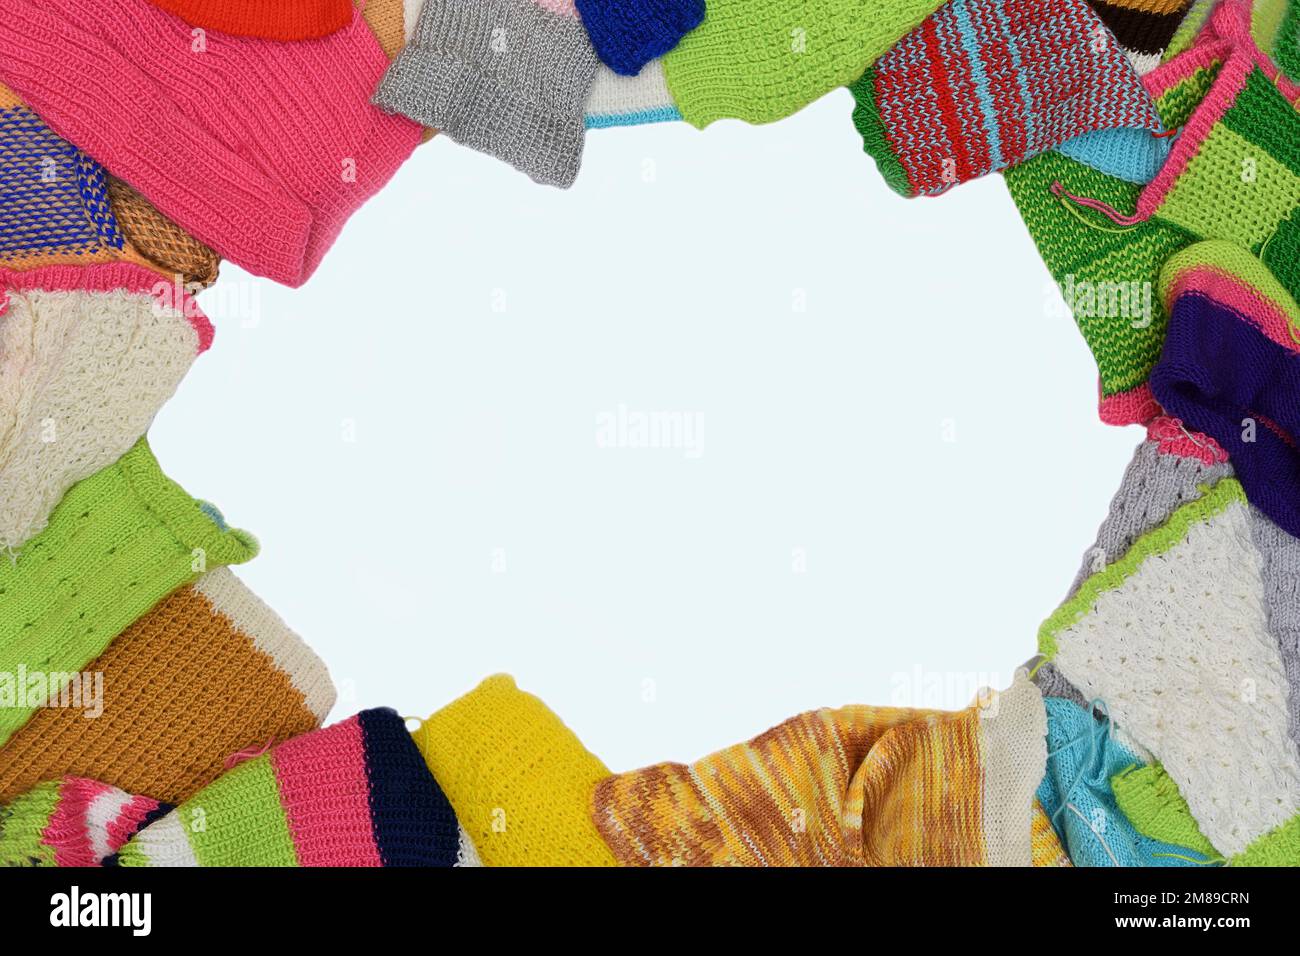 Eine Draufsicht einer Montage aus farbenfrohen, handgefertigten Wollgegenständen in Form eines ovalen Wolls auf einem sauberen weißen Hintergrund Stockfoto